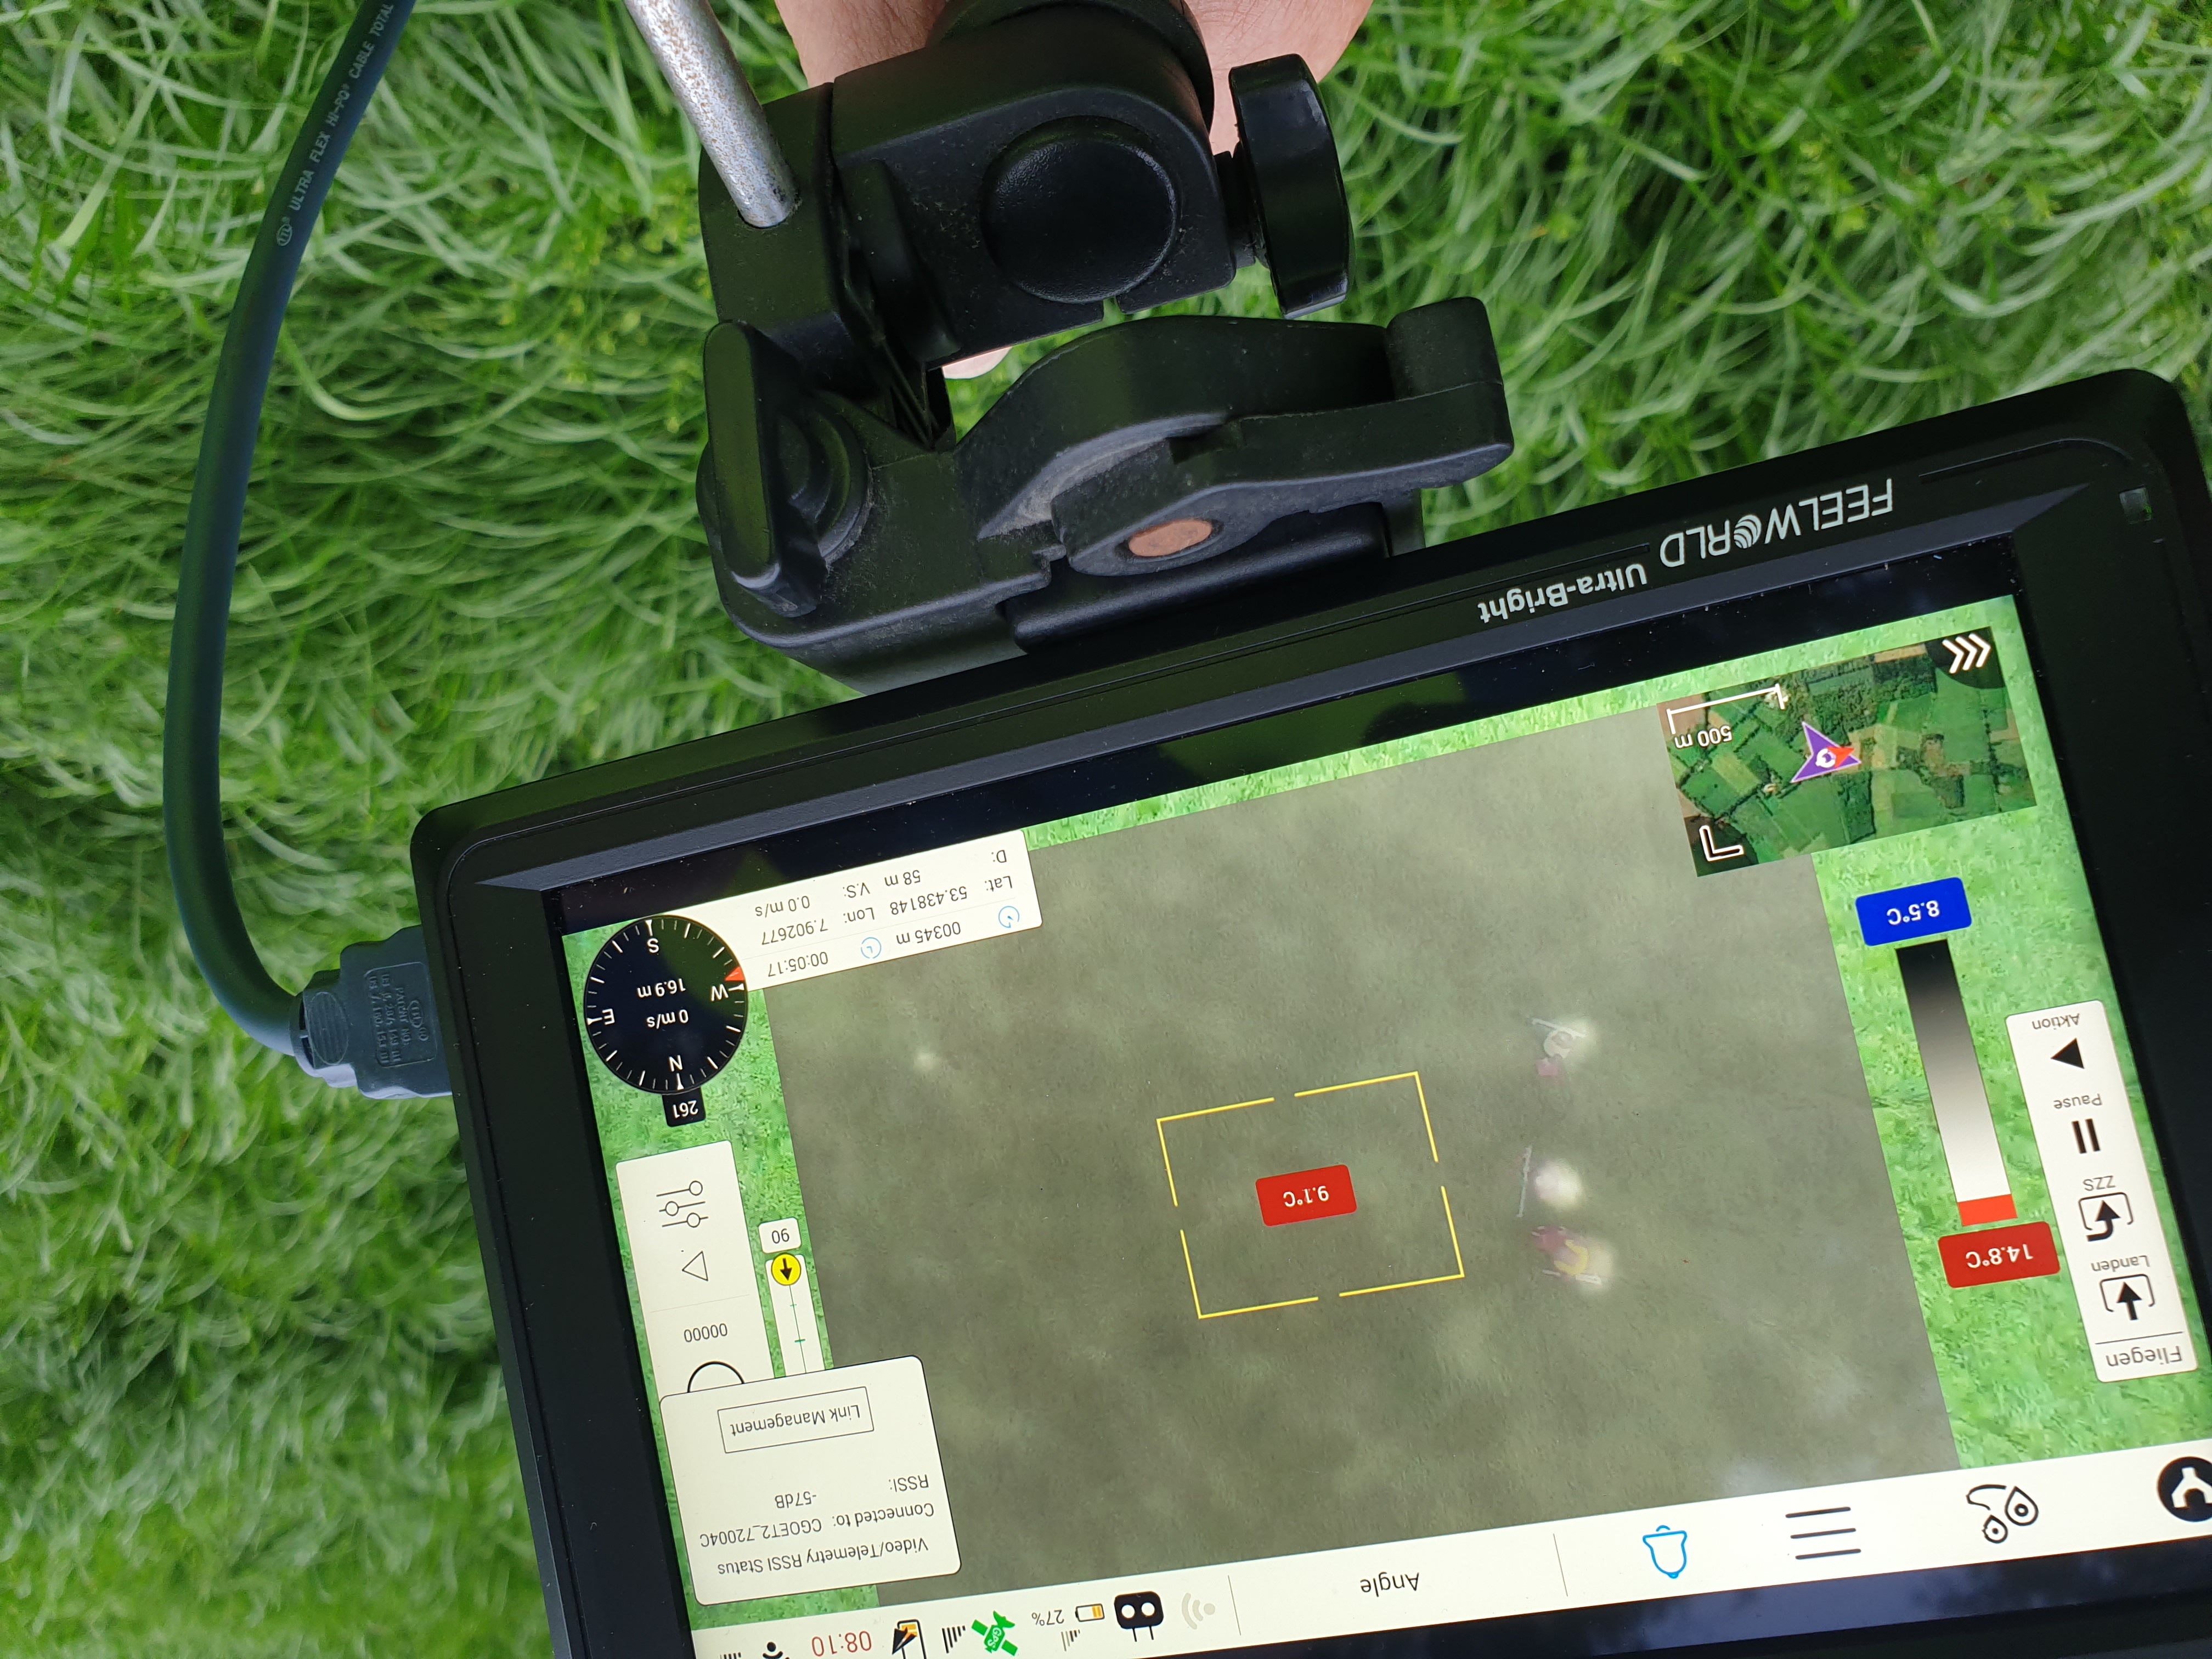 Der Display der Drohne (Quelle: Wildtierretter Horsten)